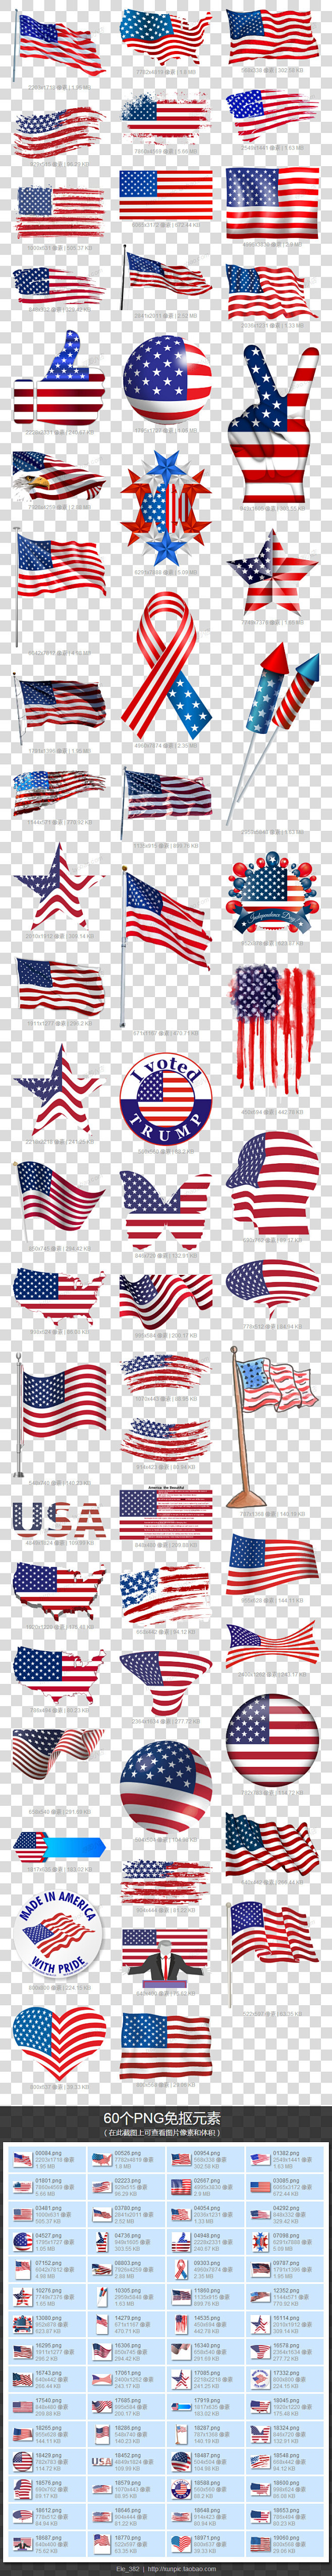 美国国旗图片素材PNG模板